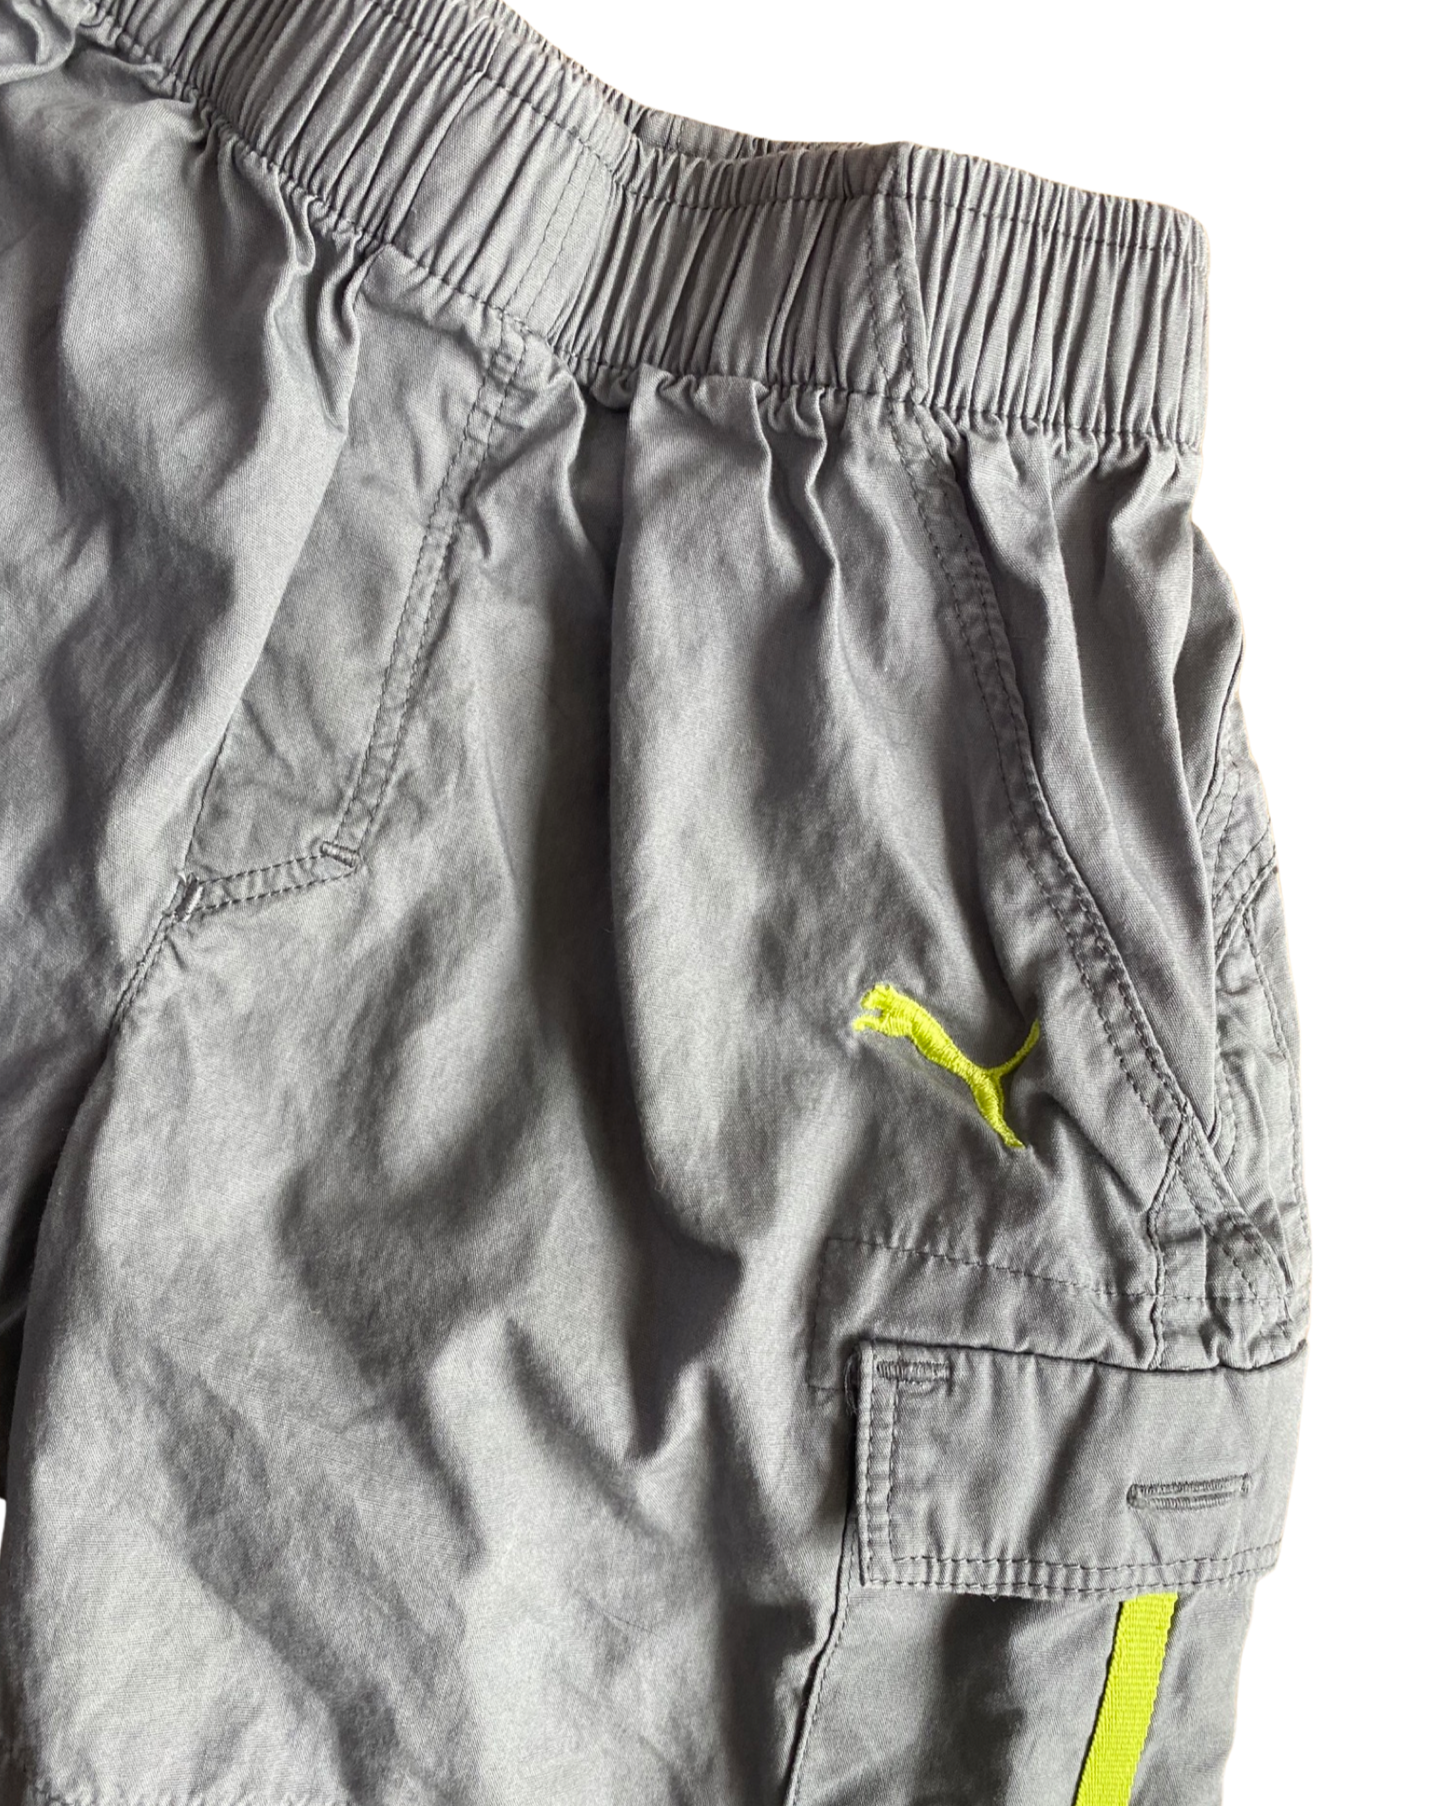 Puma lightweight grey cargo shorts (3-4yrs)